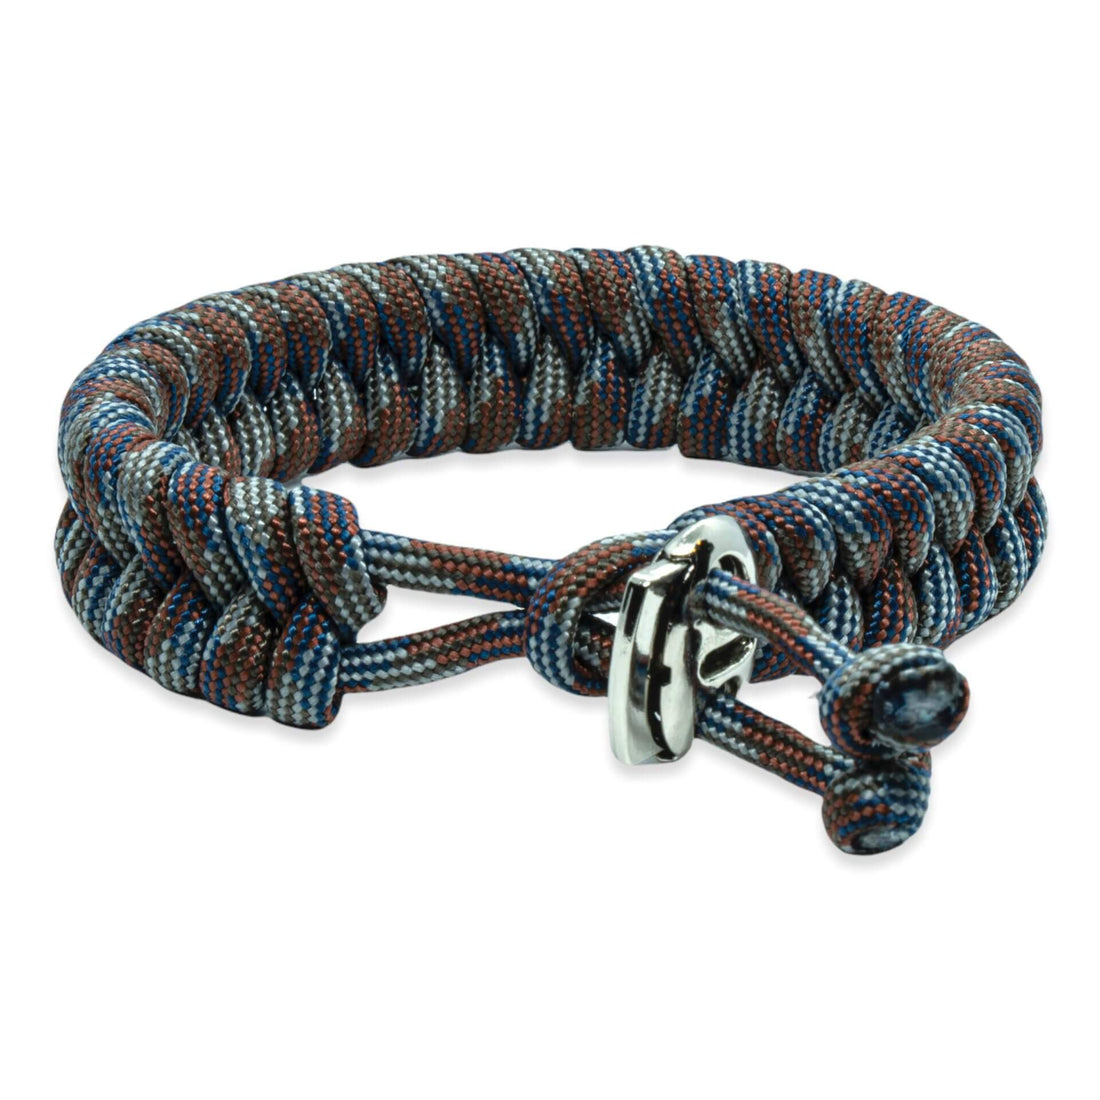 Zweedse staart armband - Bruin blauw grijze touw kleuren